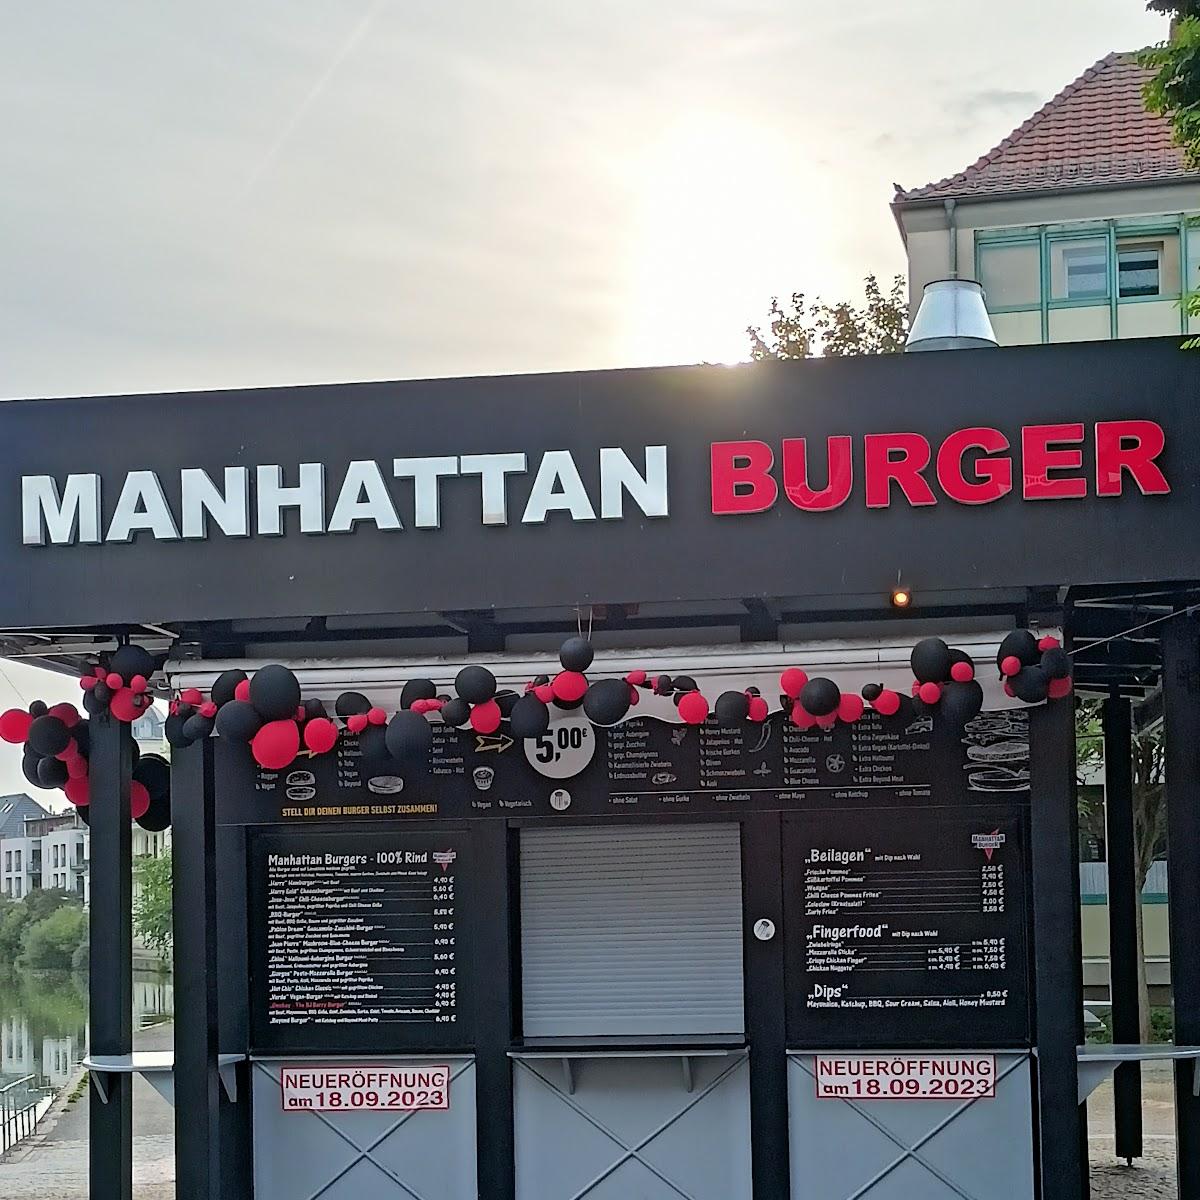 Restaurant "Manhattan Burger" in Brandenburg an der Havel